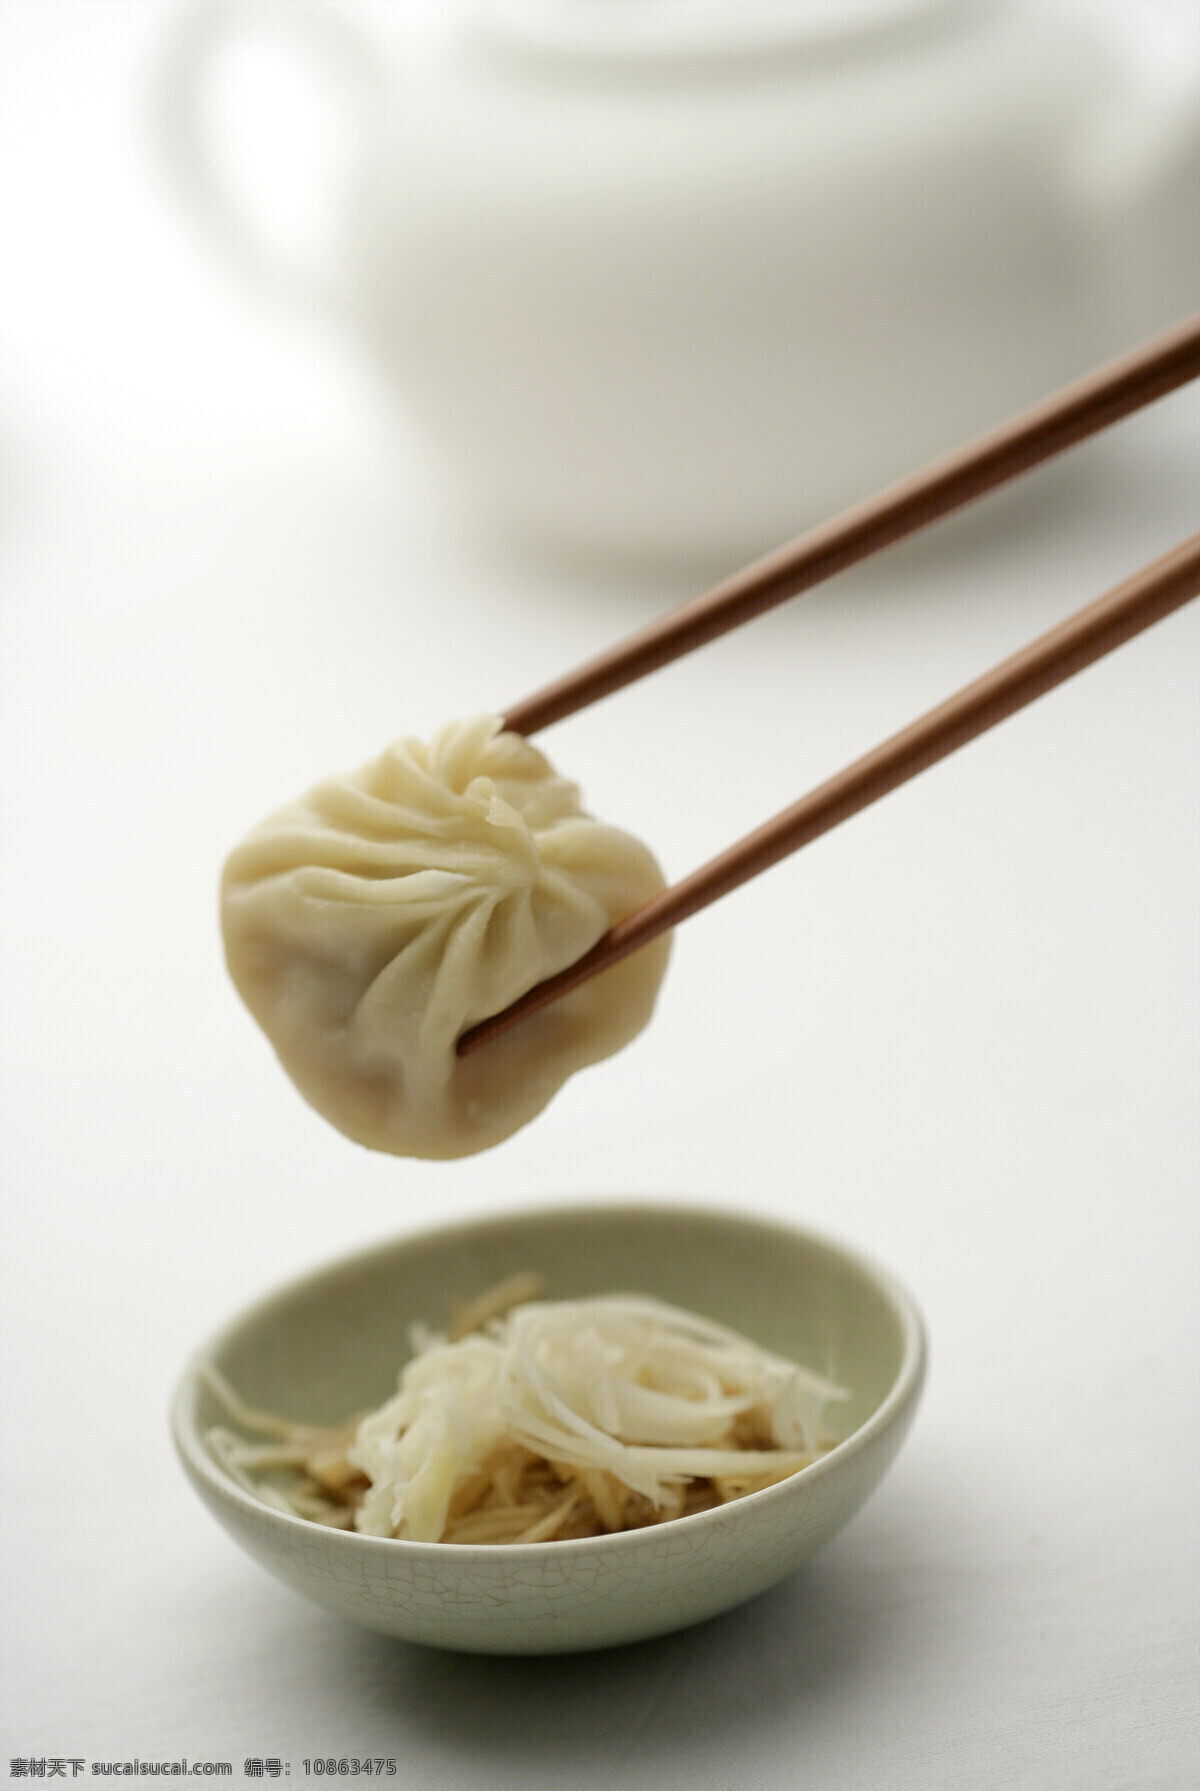 包子 小笼包 食品 筷子 咸菜 美食 中国美食 传统美食 餐饮美食